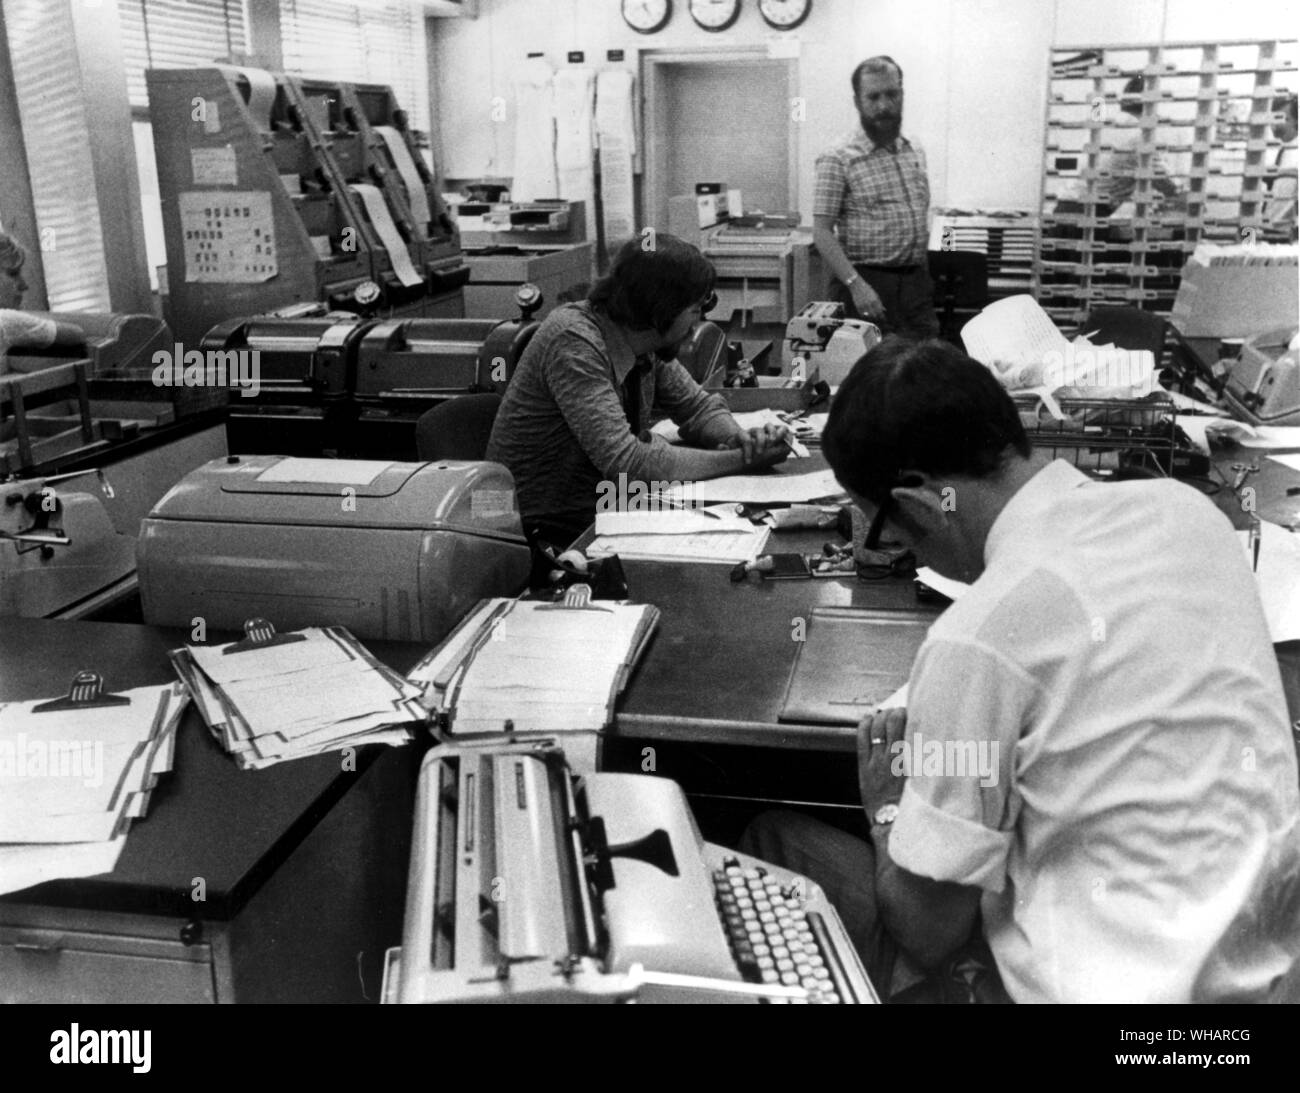 Ein Blick in die Redaktion von Radio Freies Europa in München, Deutschland, wo Nachrichten aus der ganzen Welt gesammelt und bearbeitet werden. 7. Juni 1971 Stockfoto